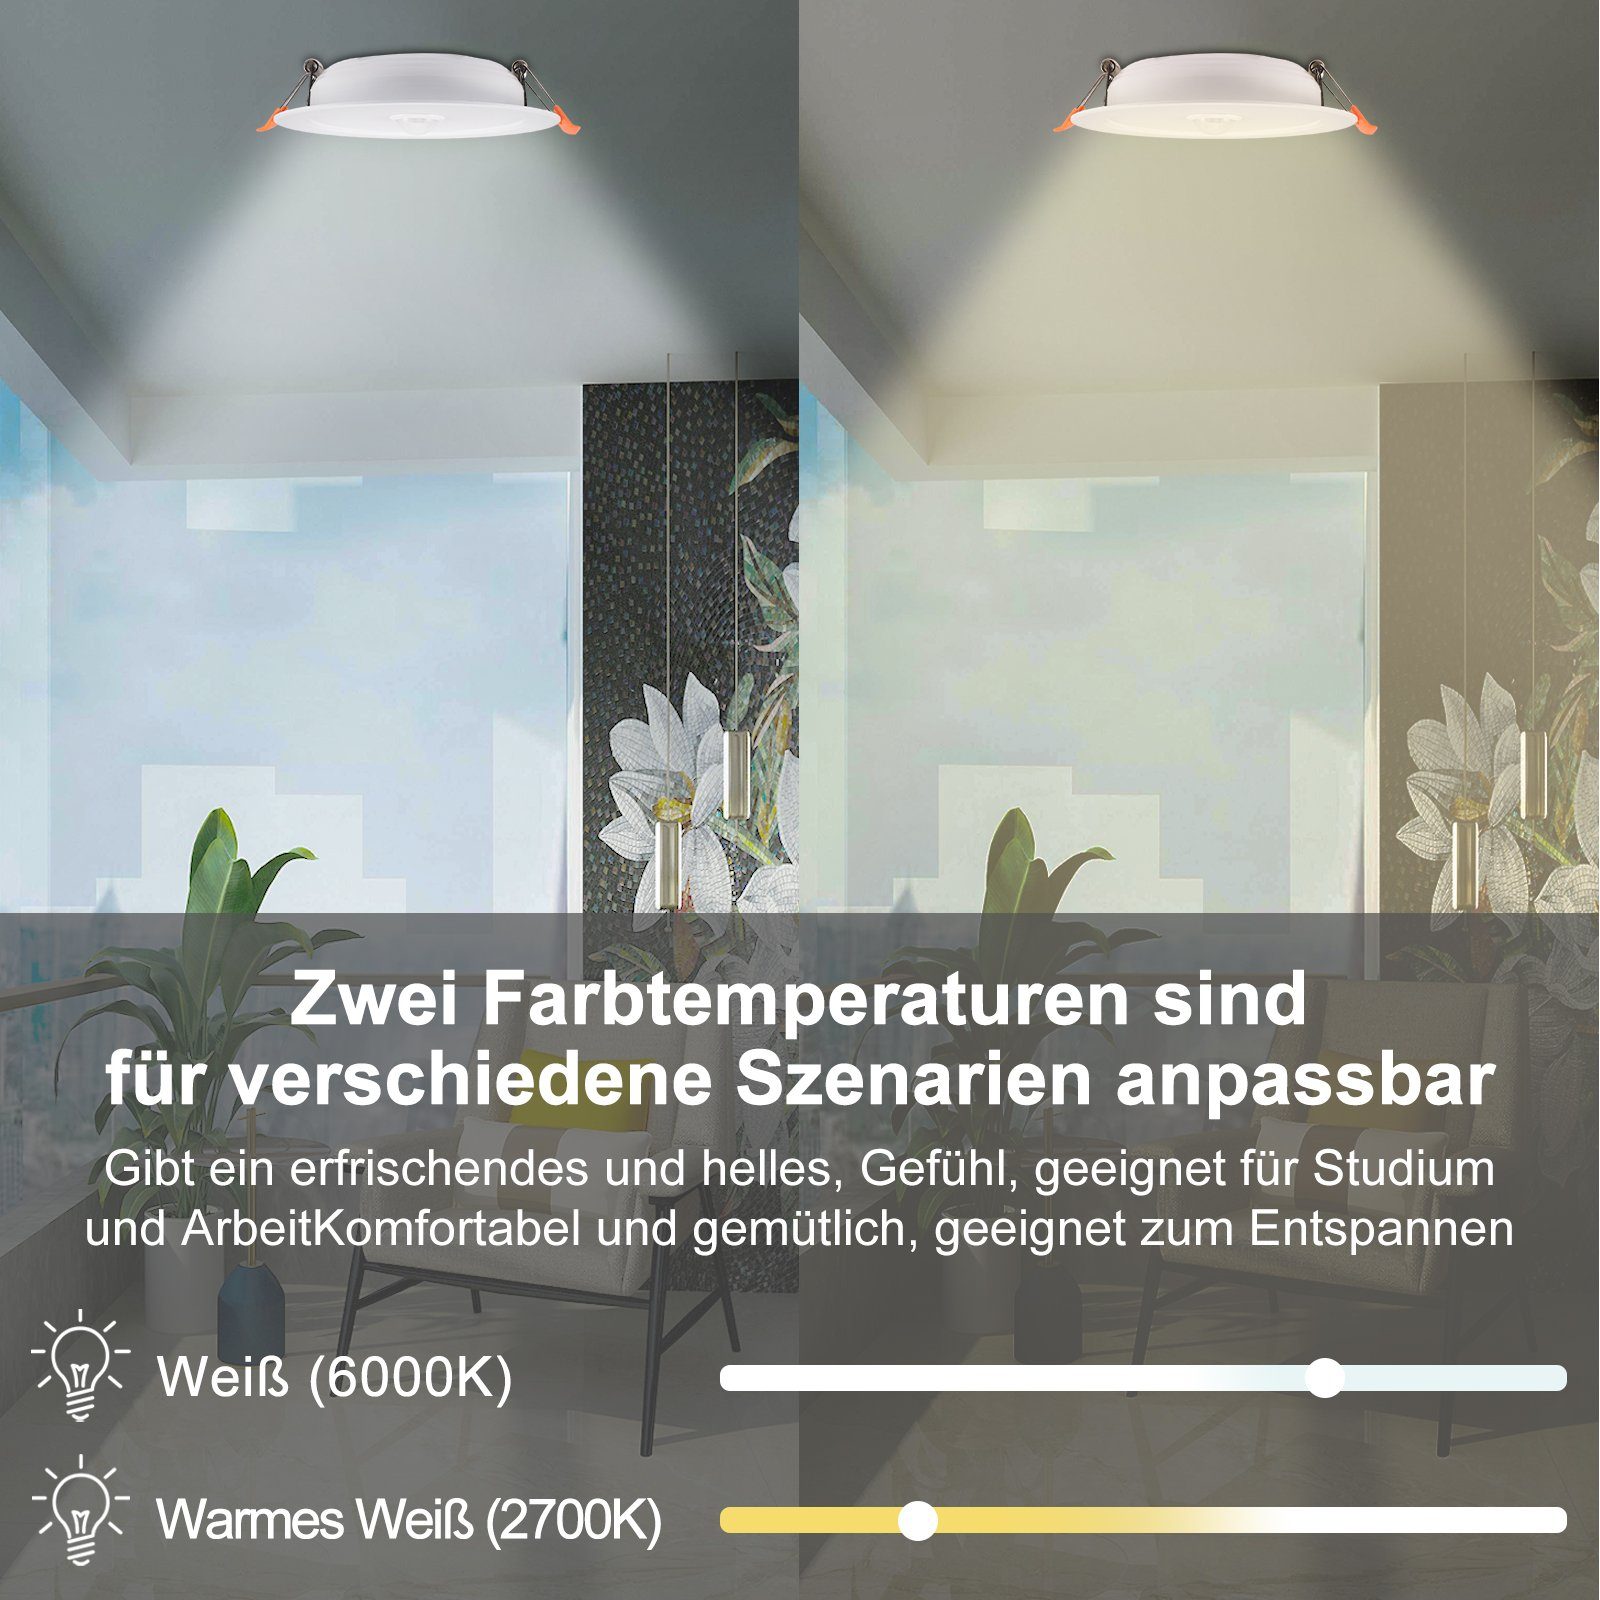 Rosnek LED Einbaustrahler 12W, Reinweiß, Flure Warmweiß für Balkone Wohnräume Lagerhallen Deko, Sensor-Induktion